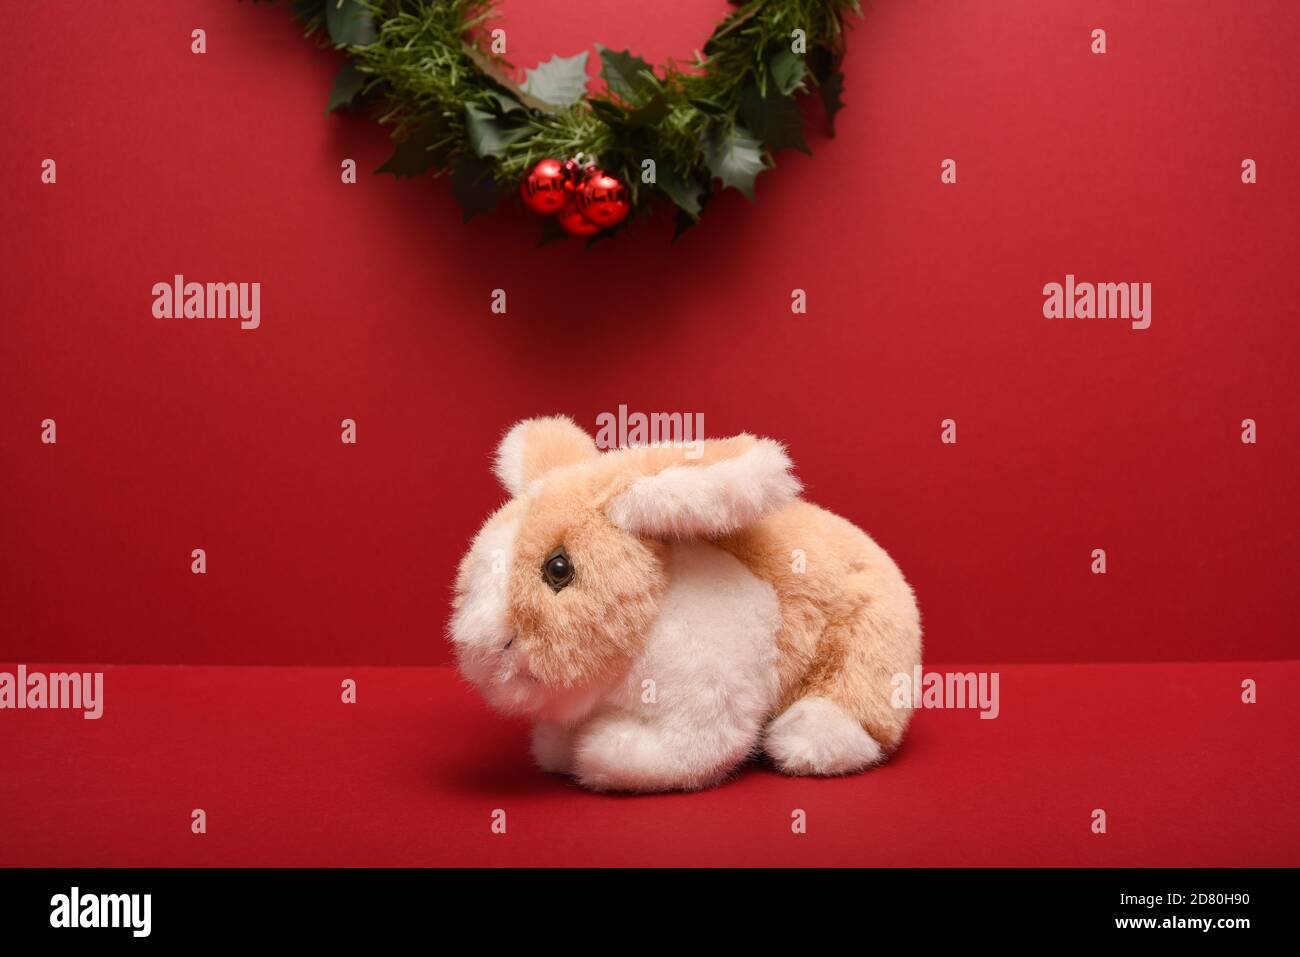 pequeño conejo de juguete relleno aislado sobre un fondo rojo debajo Una guirnalda de Navidad Foto de stock